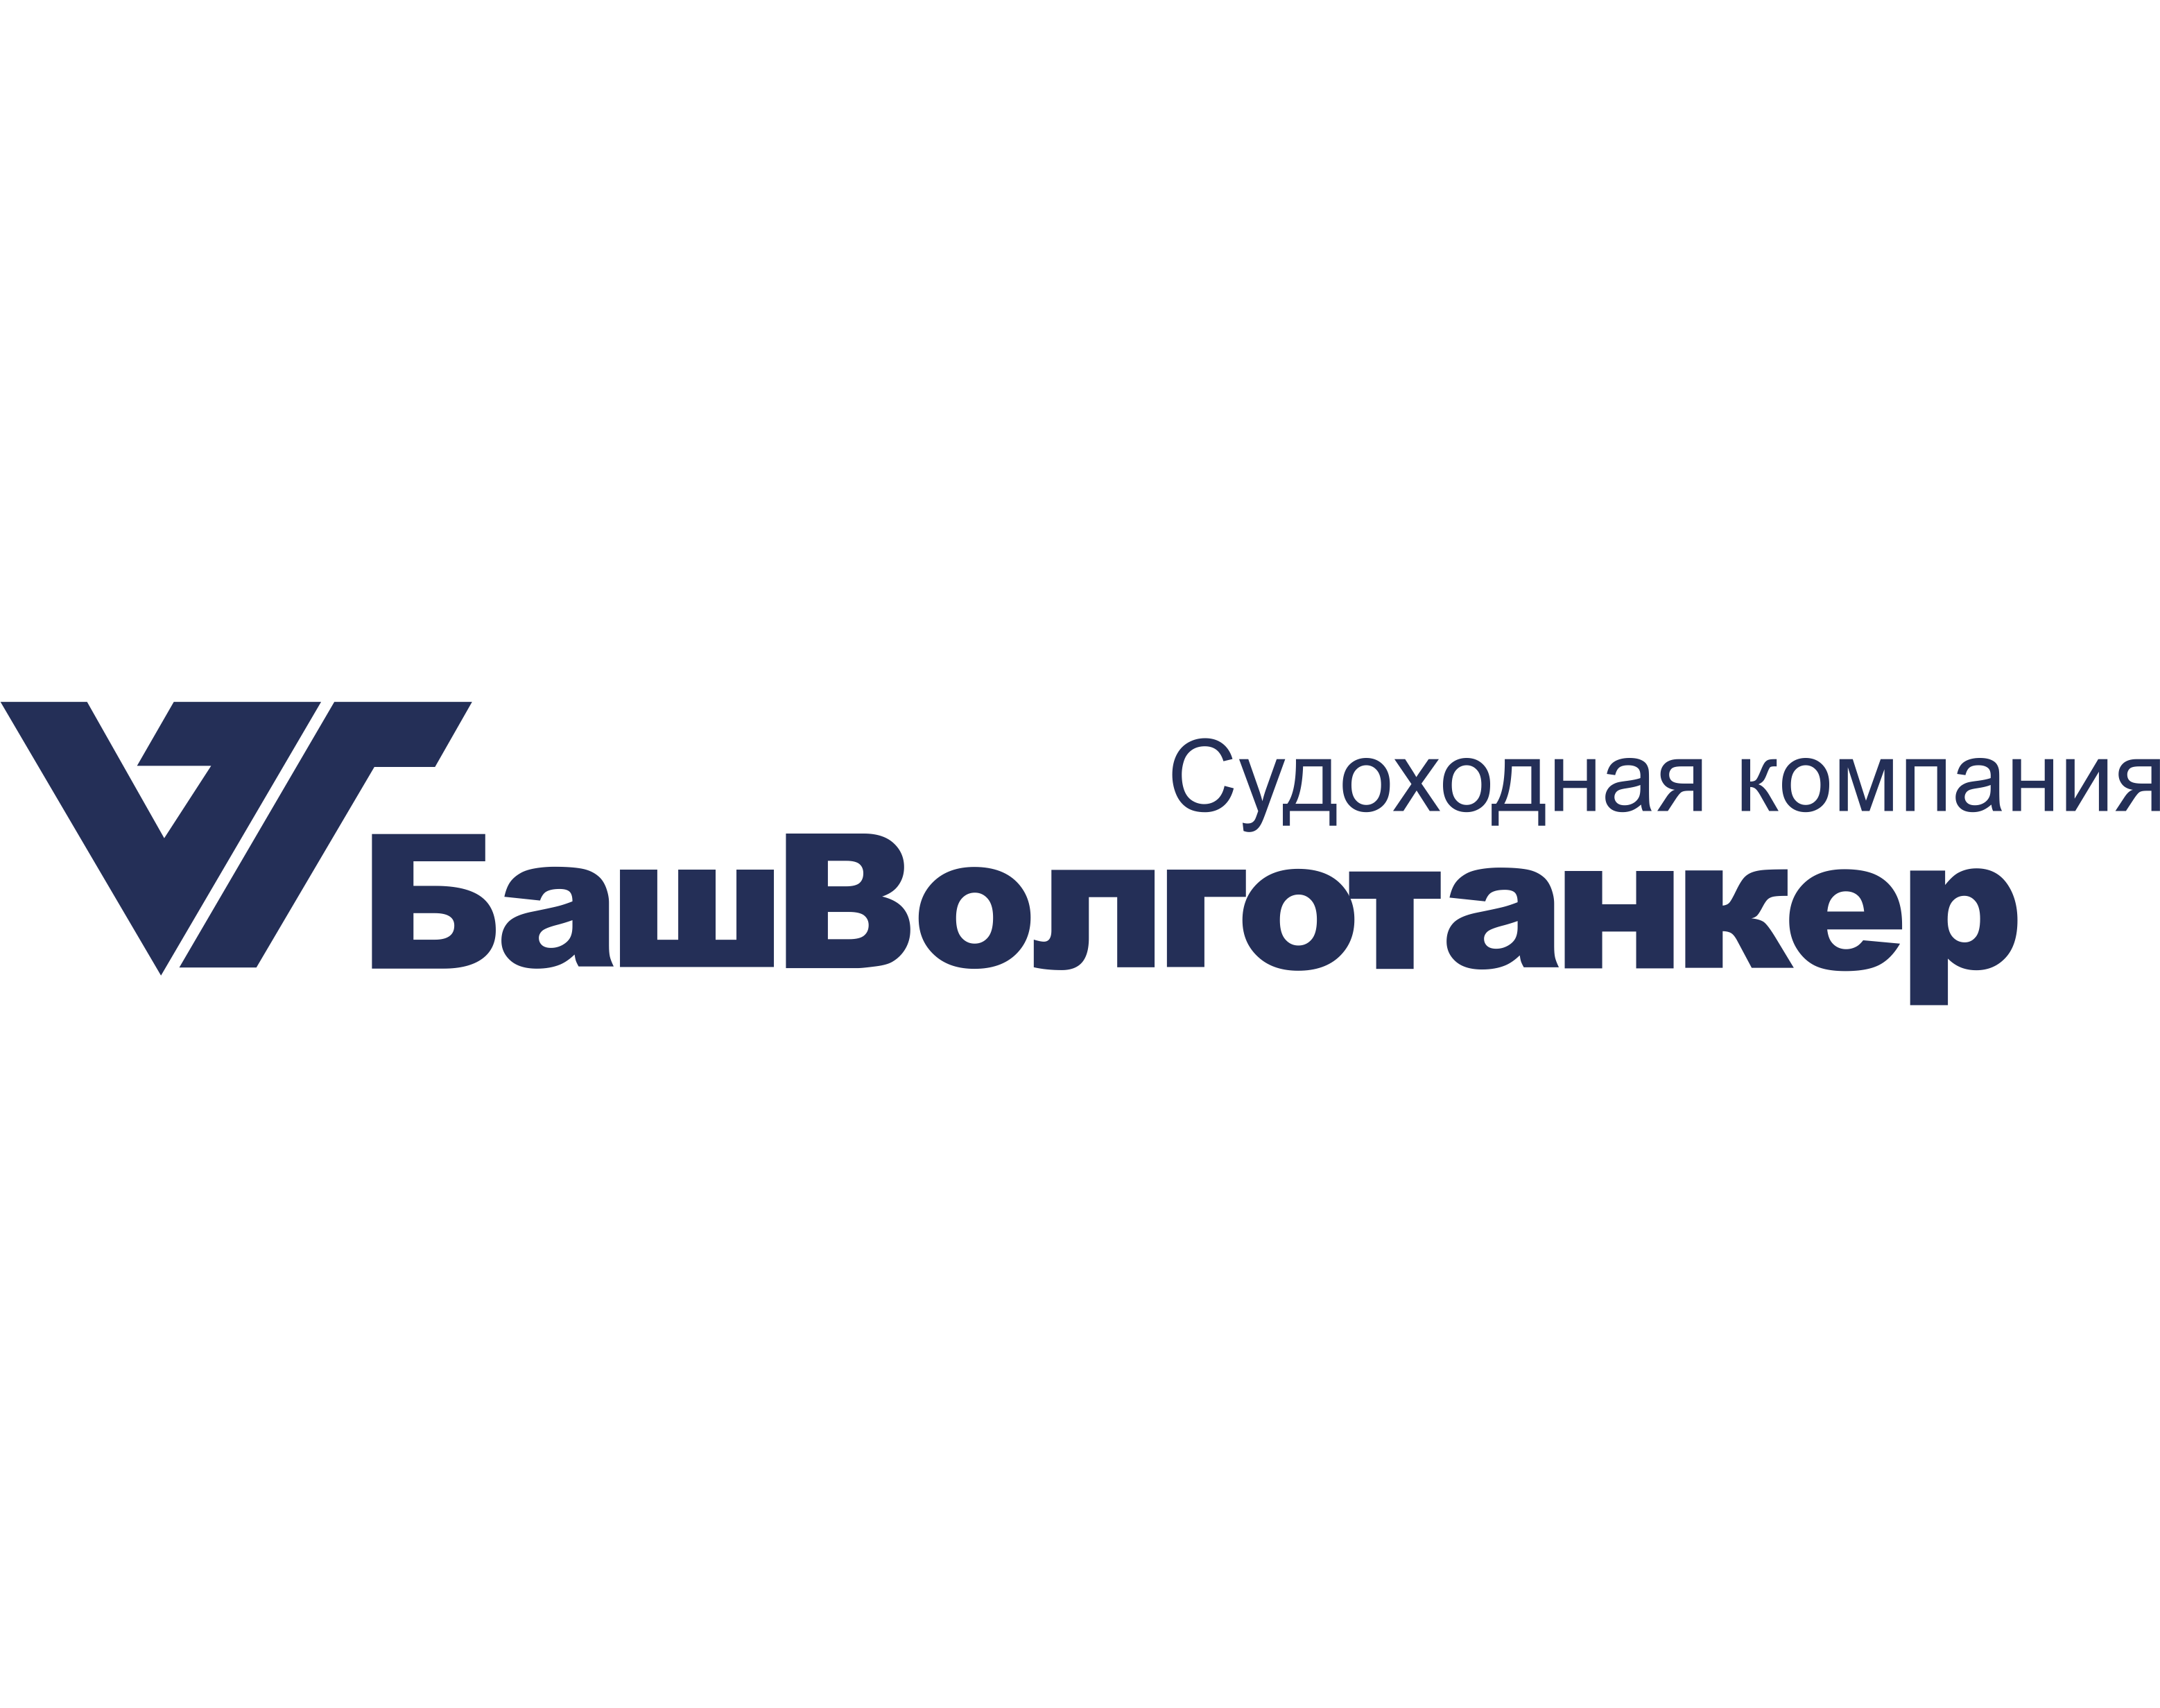 Сдан заказчику первый релиз АС «Корпоративное управление затратами» в ЗАО «БашВолгоТанкер»